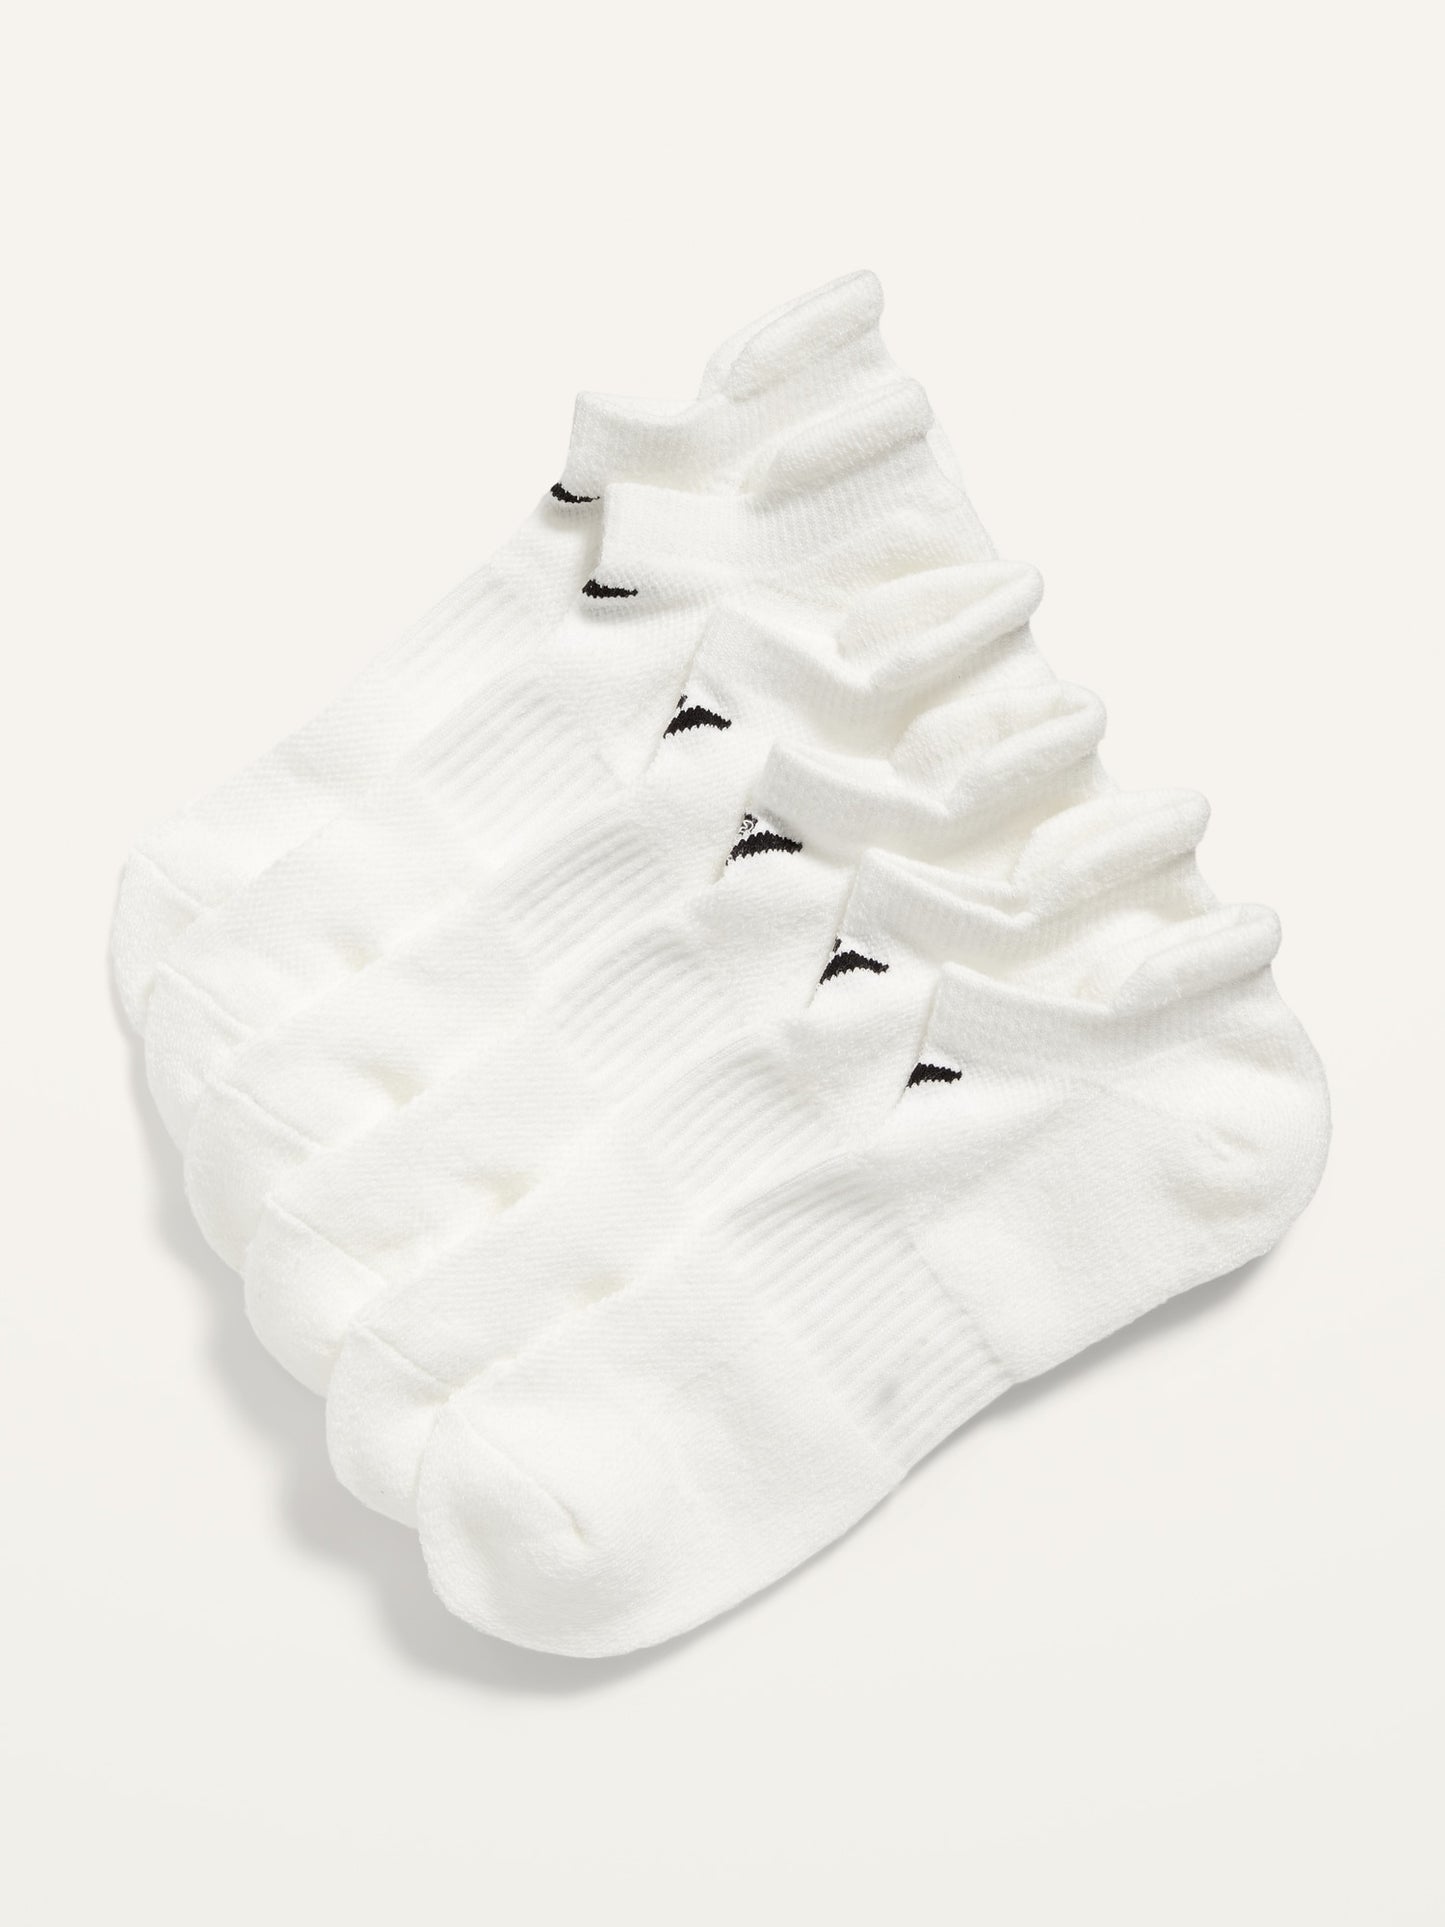 Athletic Ankle Socks 3-Pack for Men 3Pk Run Sock Heel Tab On White